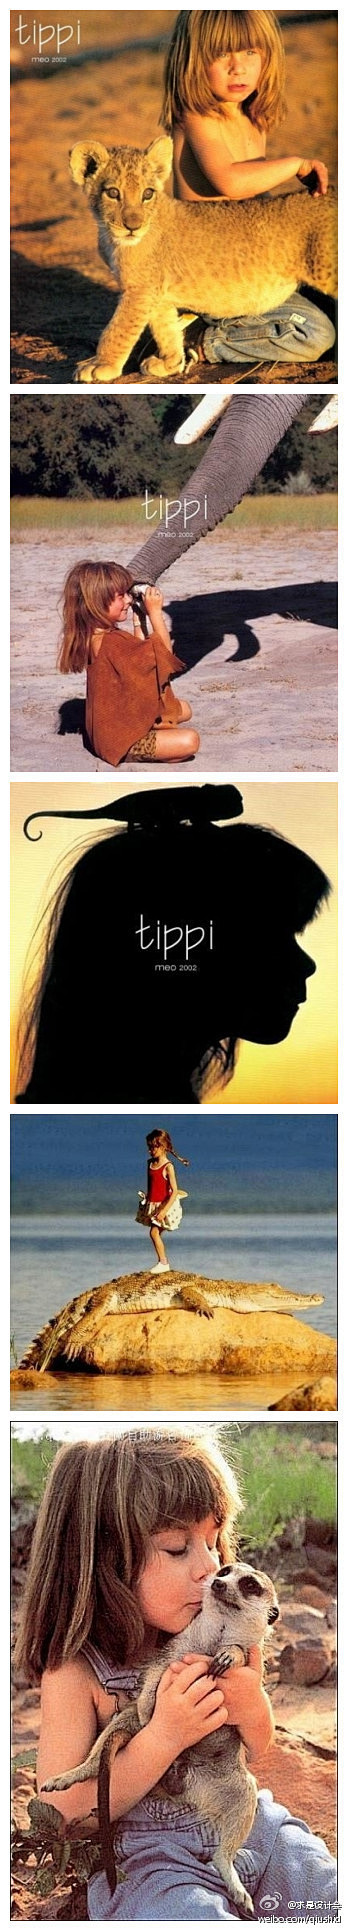 求是设计会：#世界#她叫Tippi，是个...